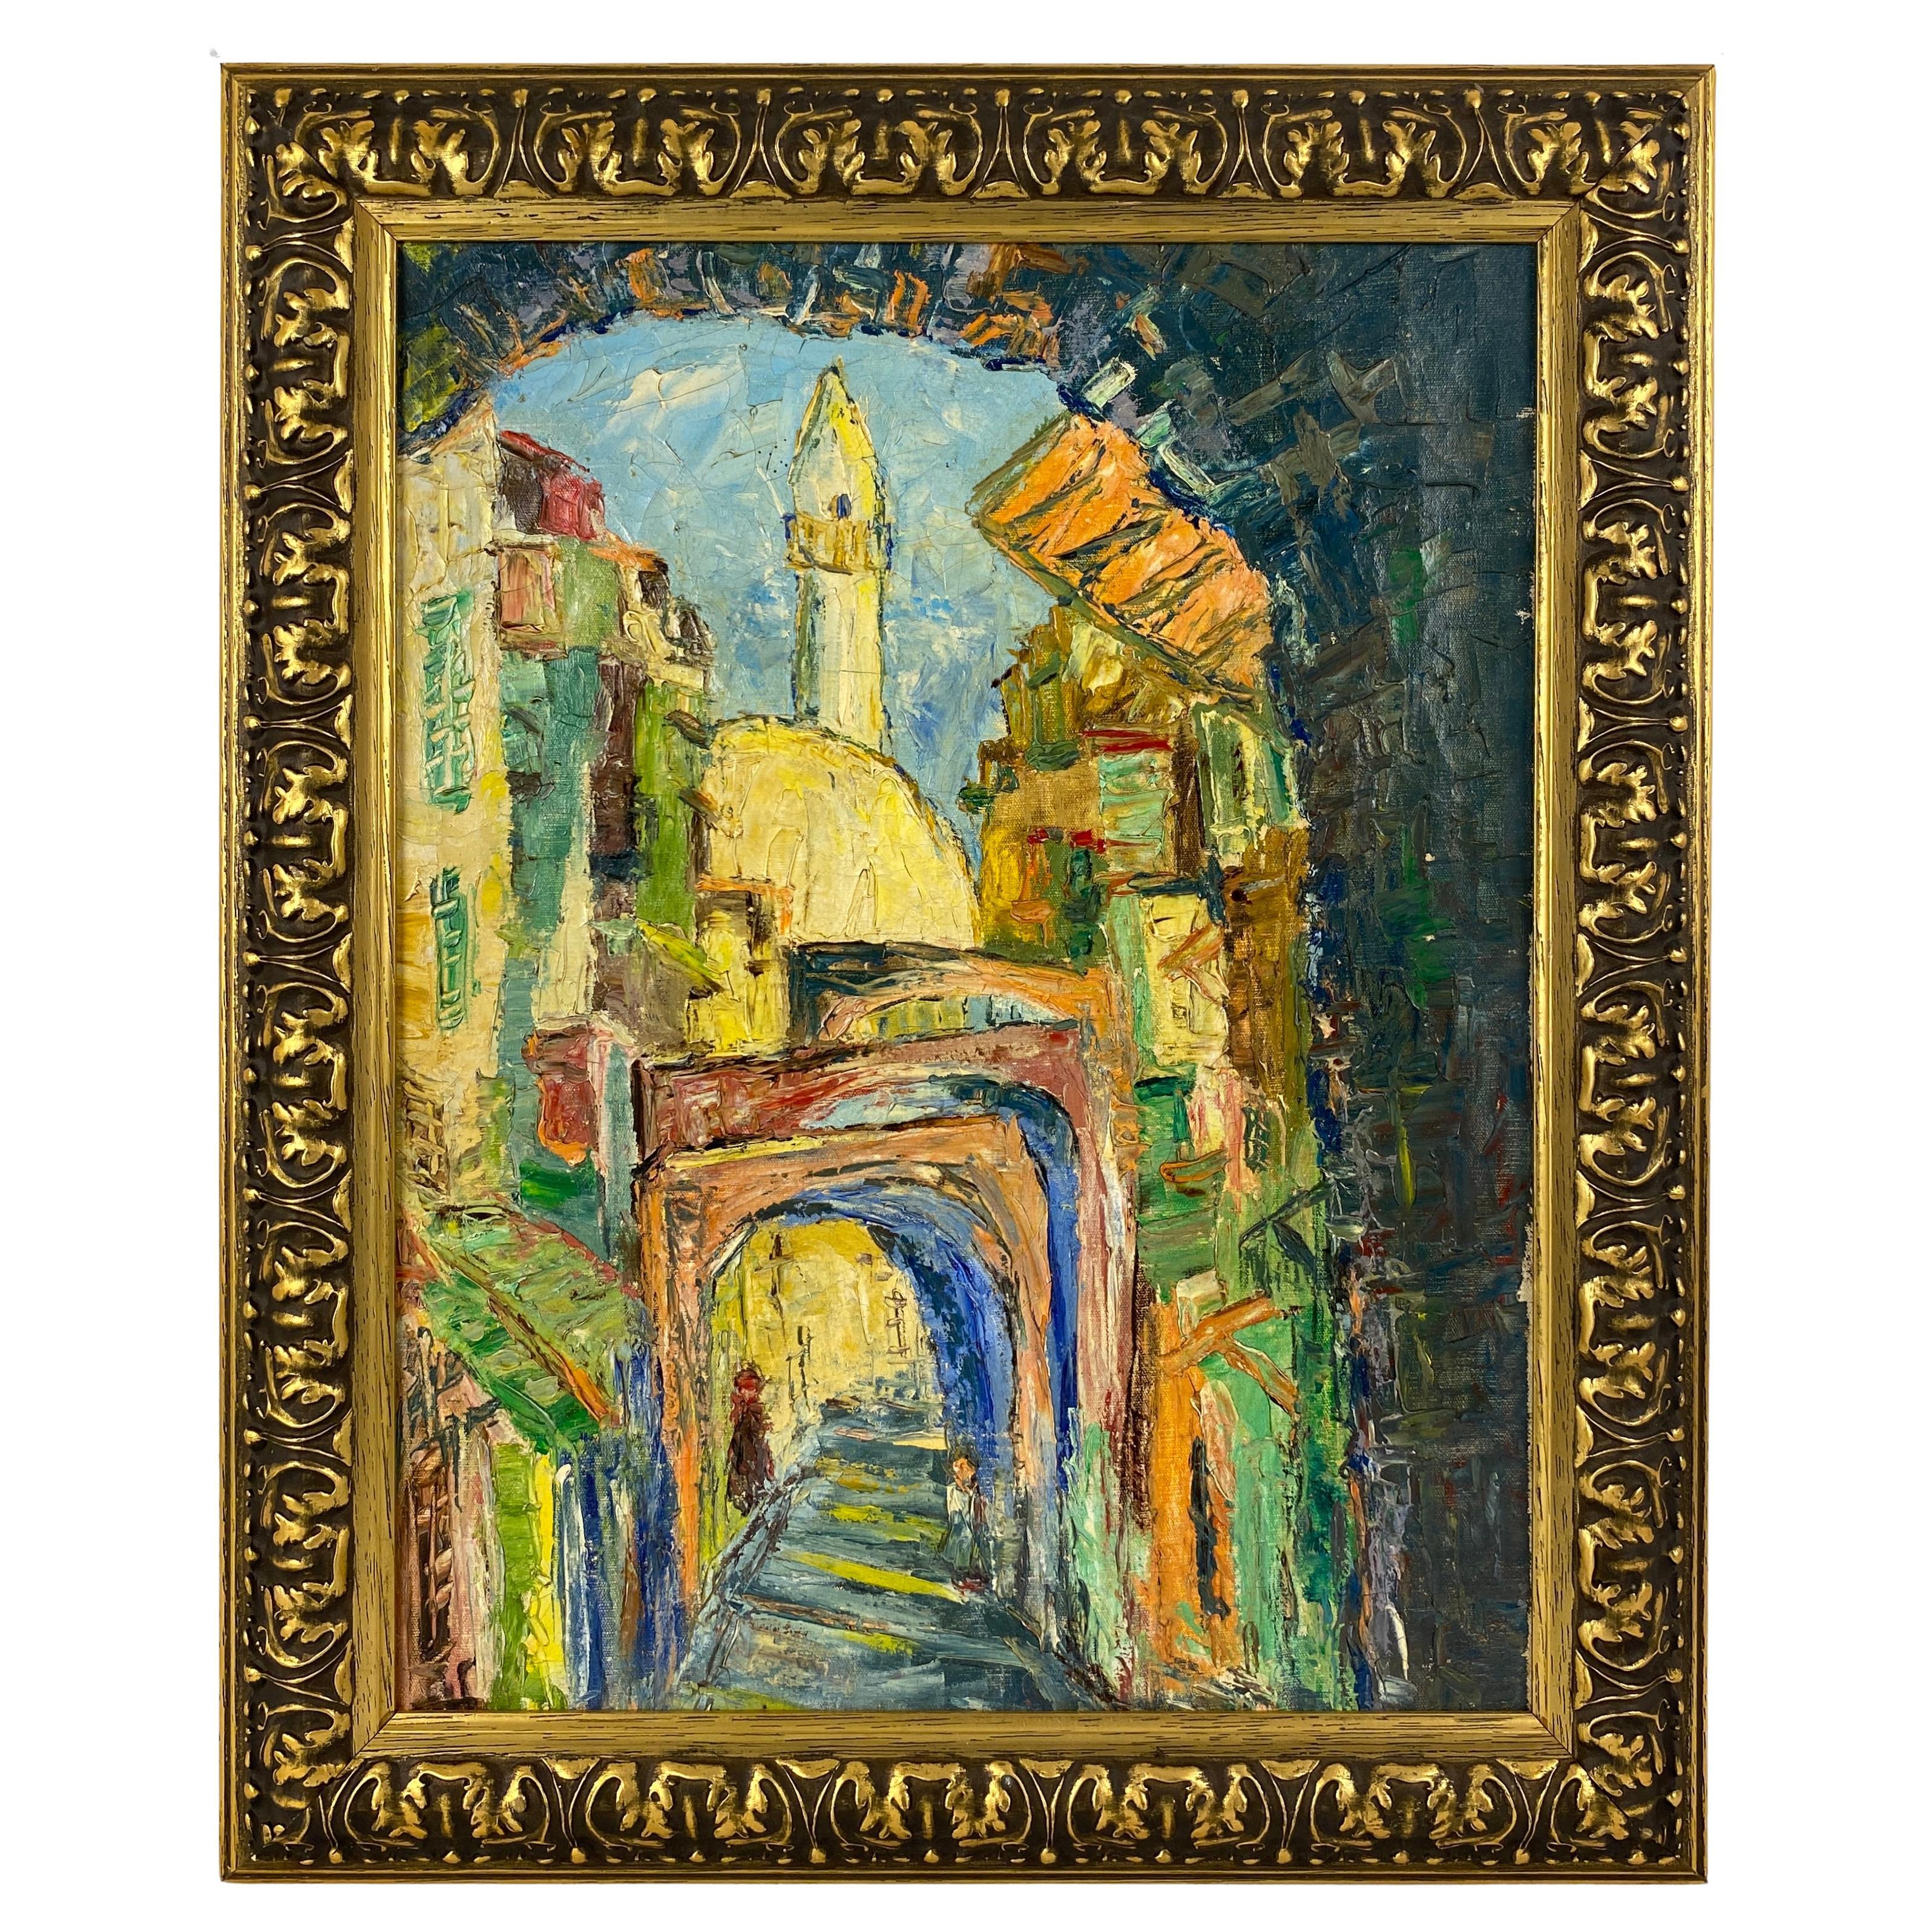 Peinture à l'huile sur toile d'un village français de style impressionniste